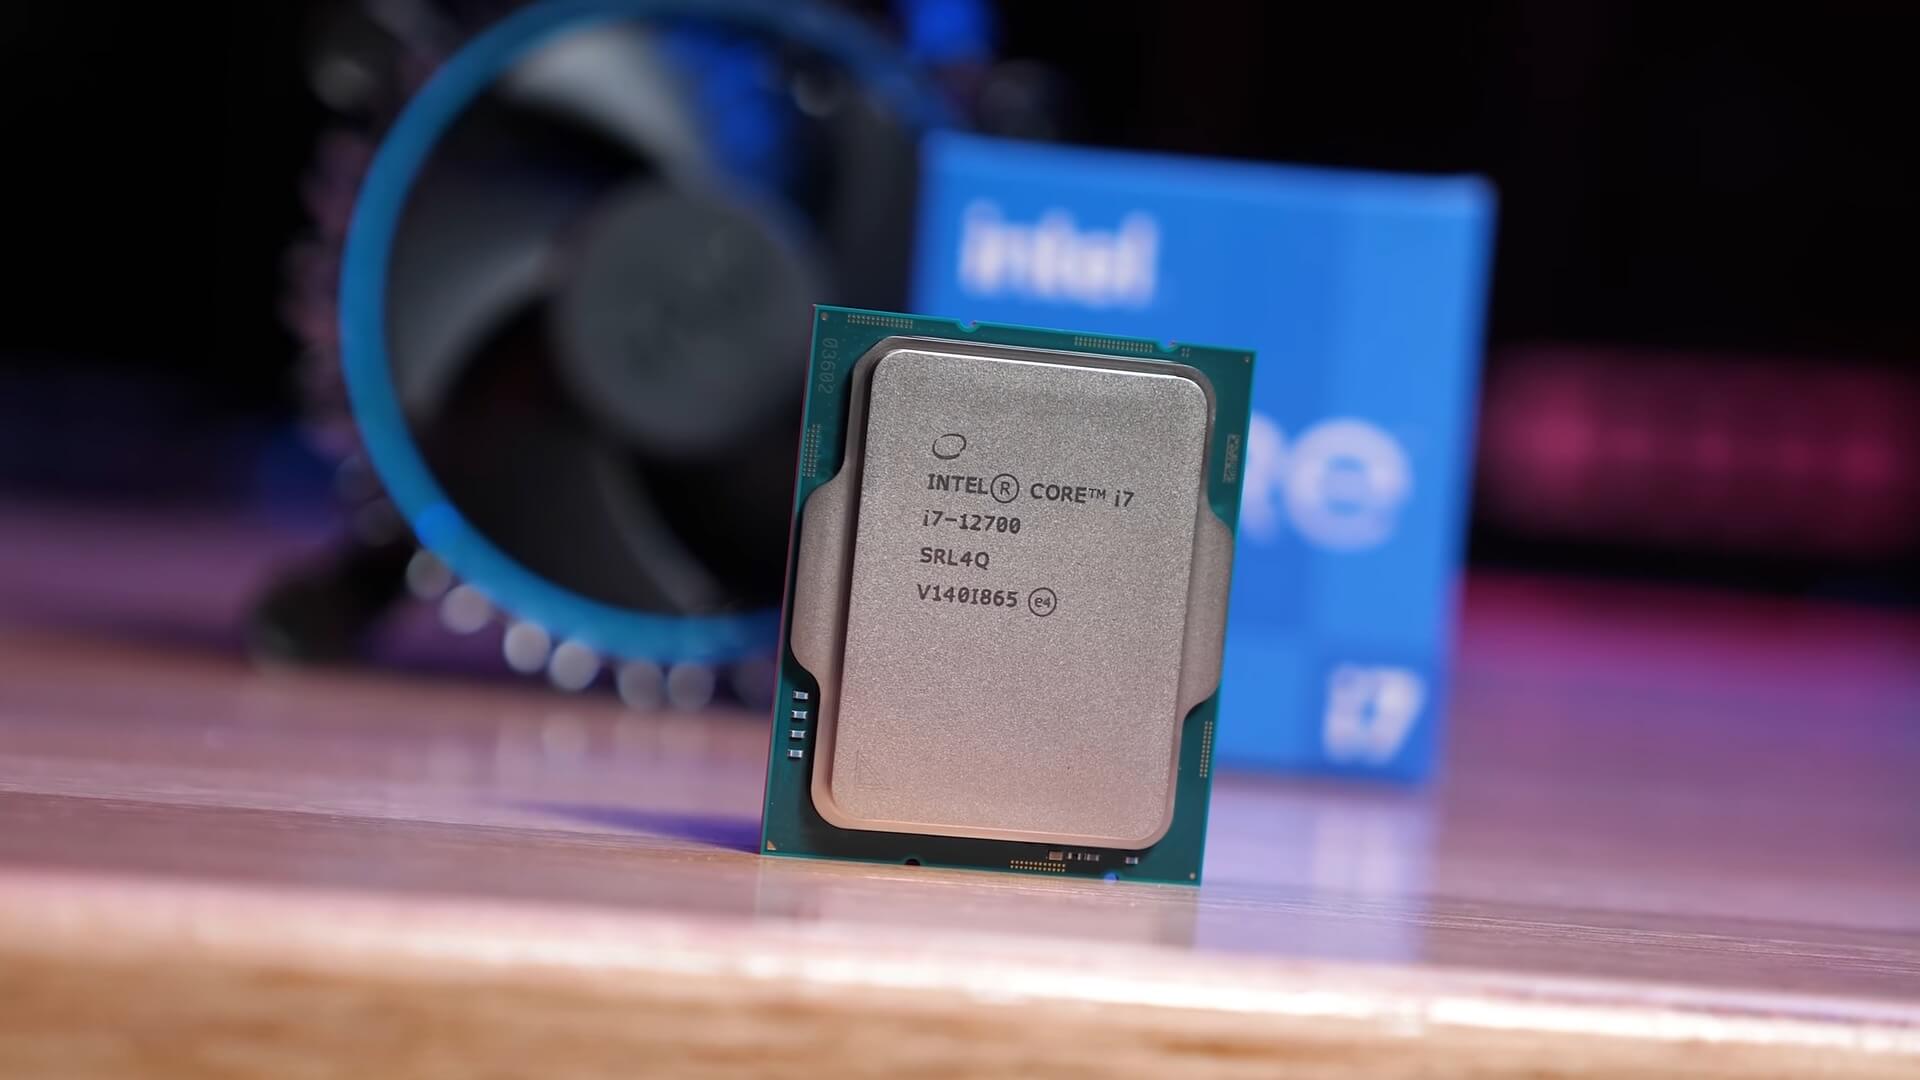 Procesor Intel Core i7-12700 je špeciálne určený pre základné dosky s päticou LGA1700 z radu Intel 600 Series, kedy sa pýši 12 jadrami s maximálnym taktom až 4,9 GHz vďaka TB 3.0 technológii.